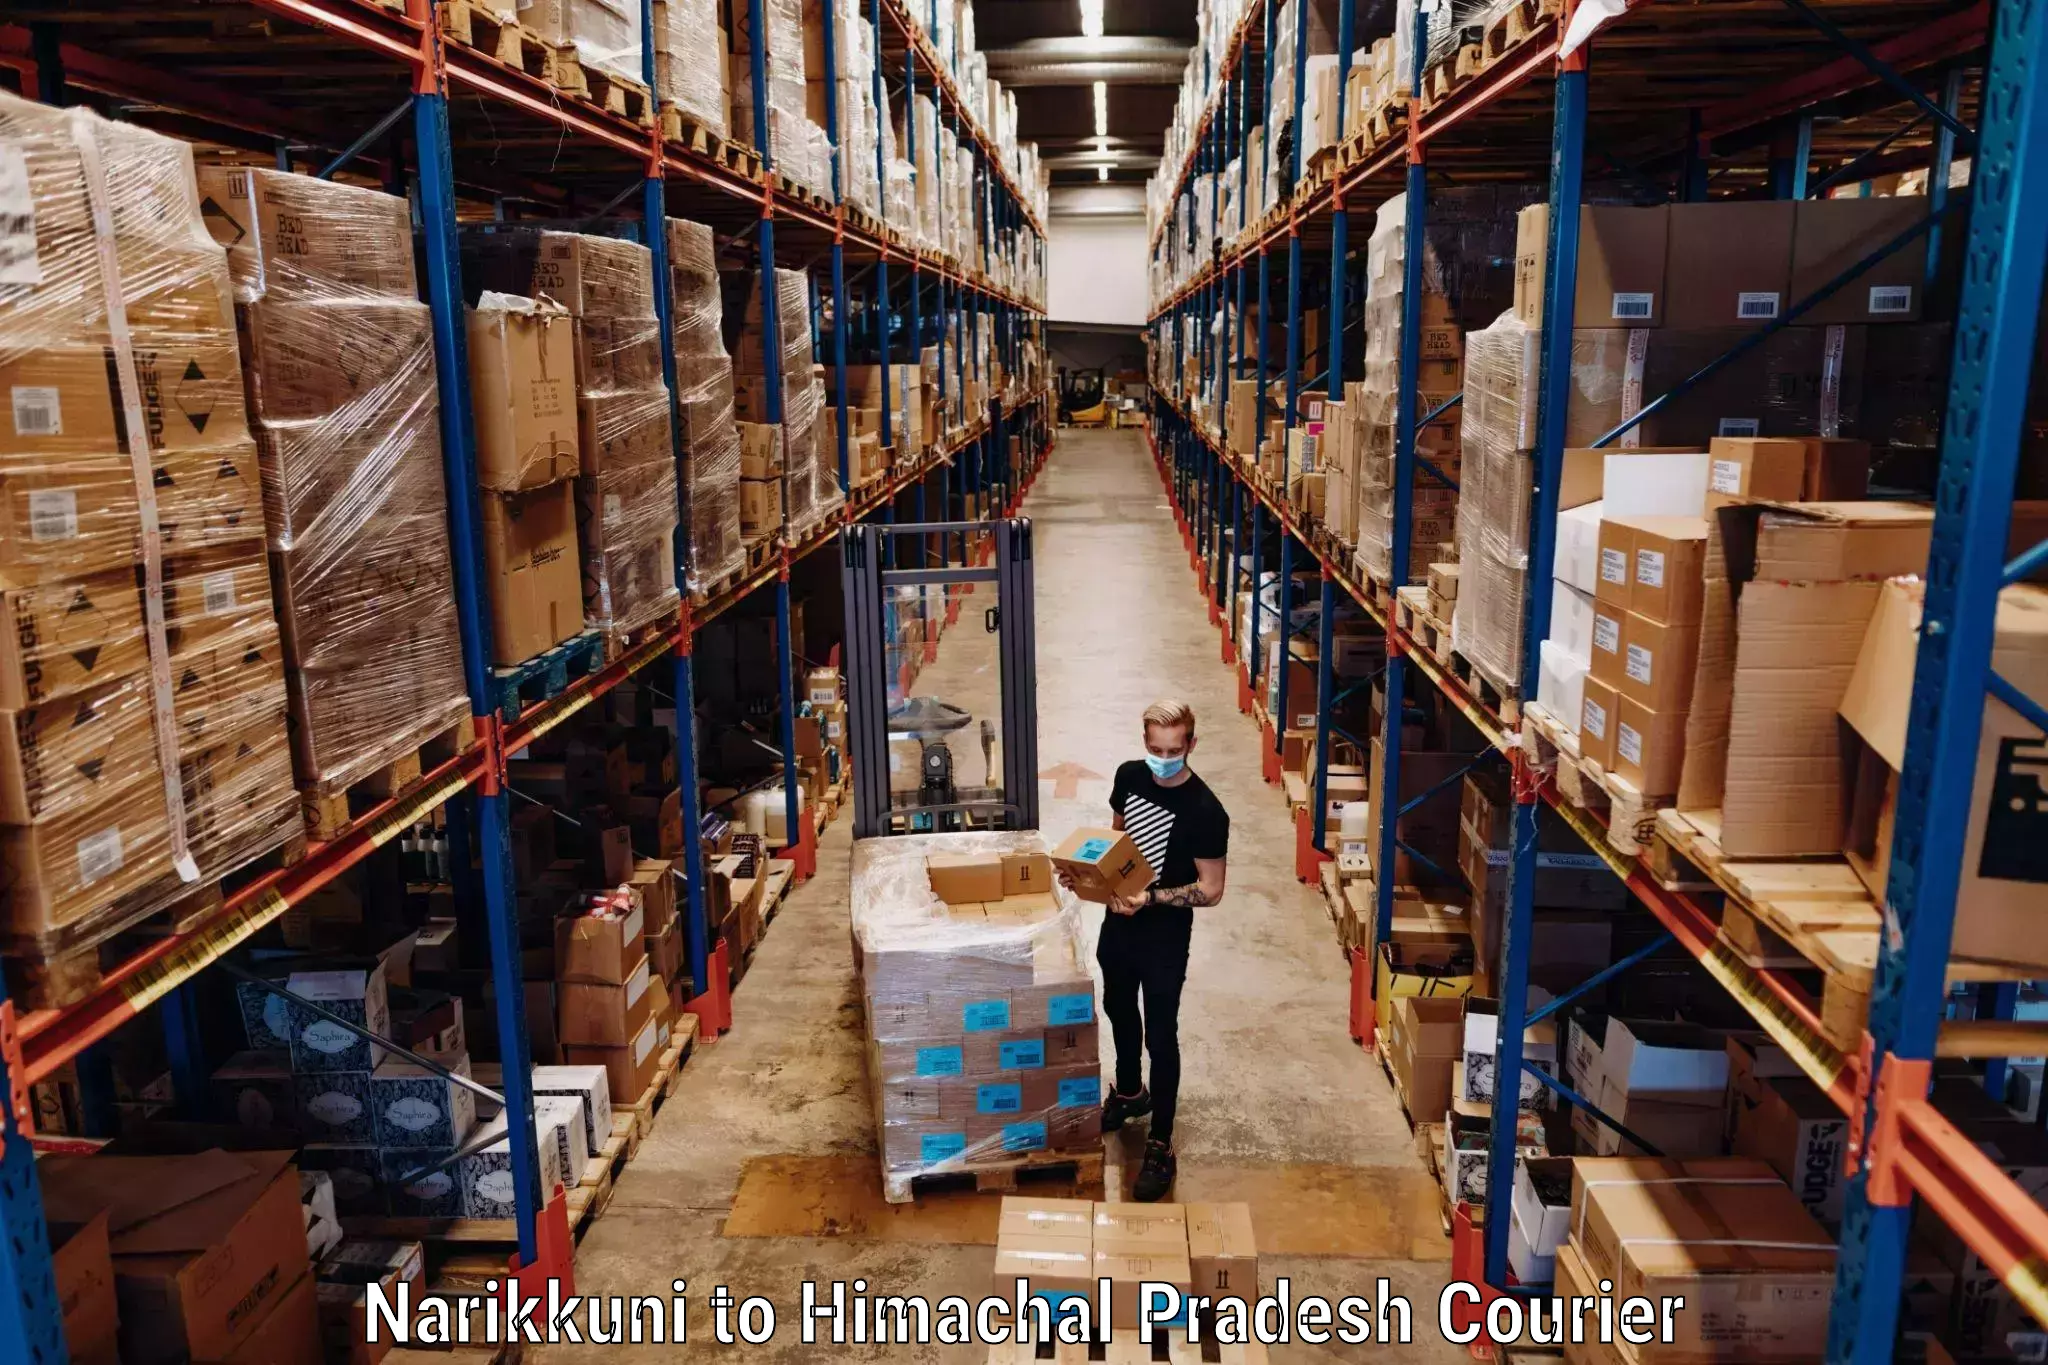 Baggage shipping service Narikkuni to Bangana